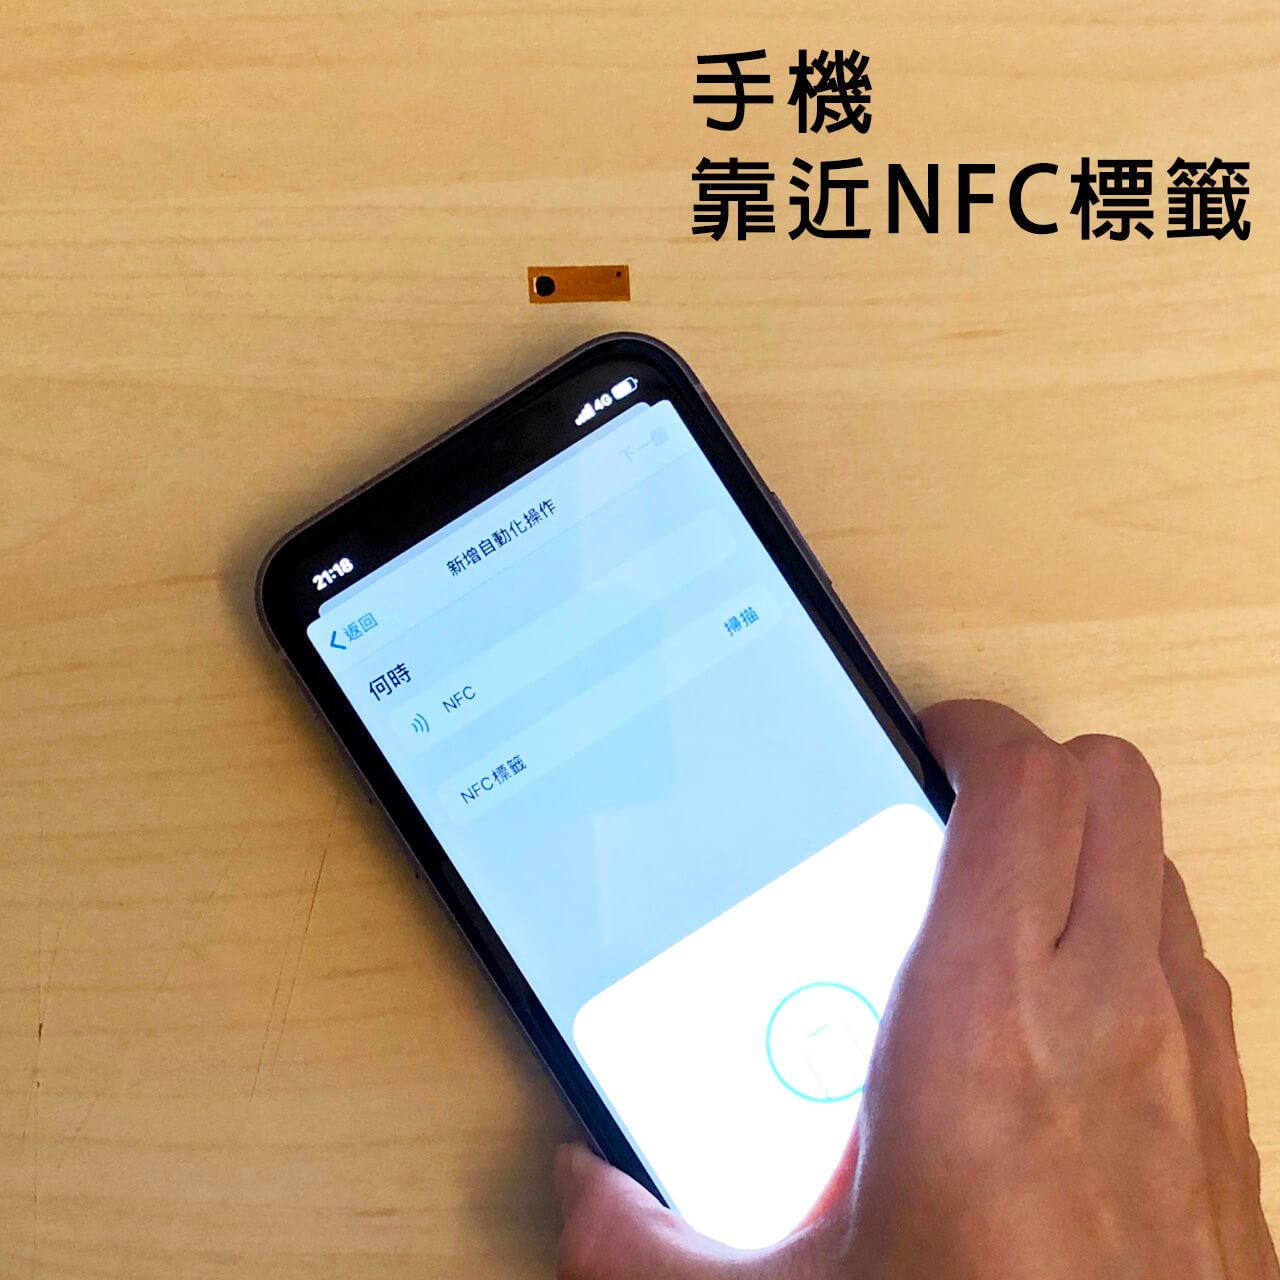 iPhone 使用 NFC 標籤教學 - 偵測